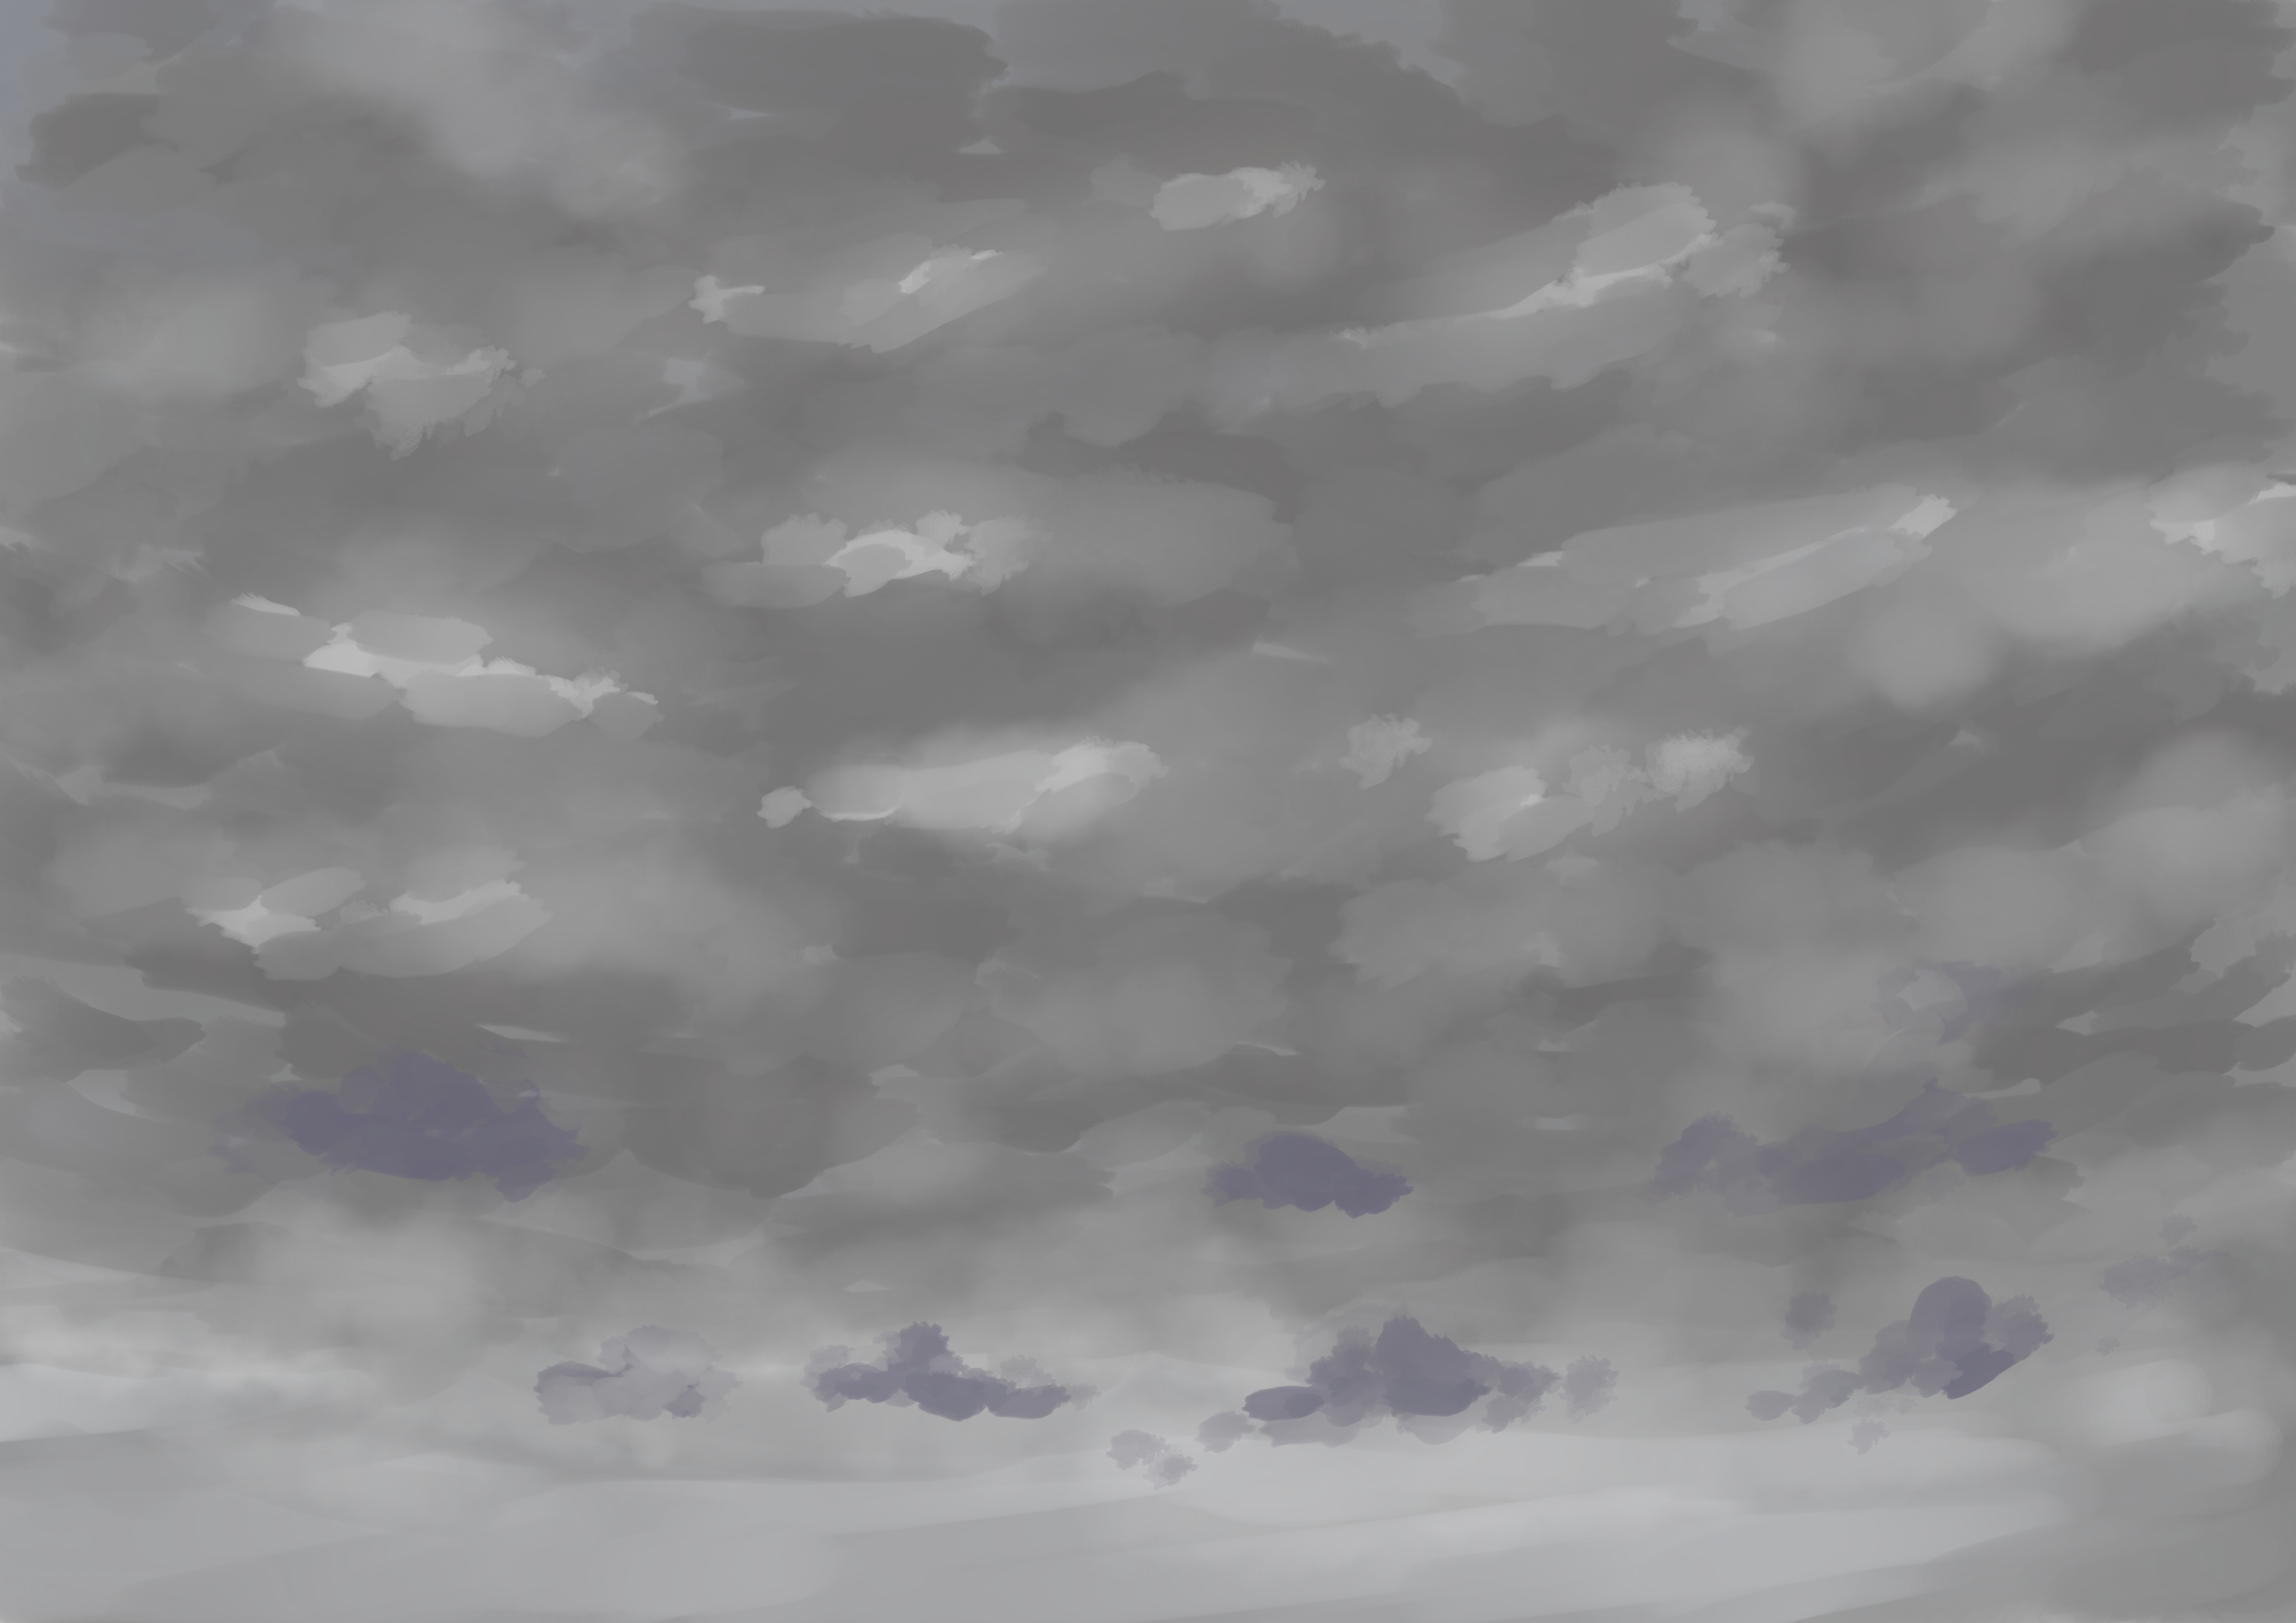 マオ Sur Twitter 空のフリー背景セットを描きました 空 イラスト フリー素材 夜空 入道雲 オリジナル Illustration 月 雲 T Co Luvwwroygl Twitter